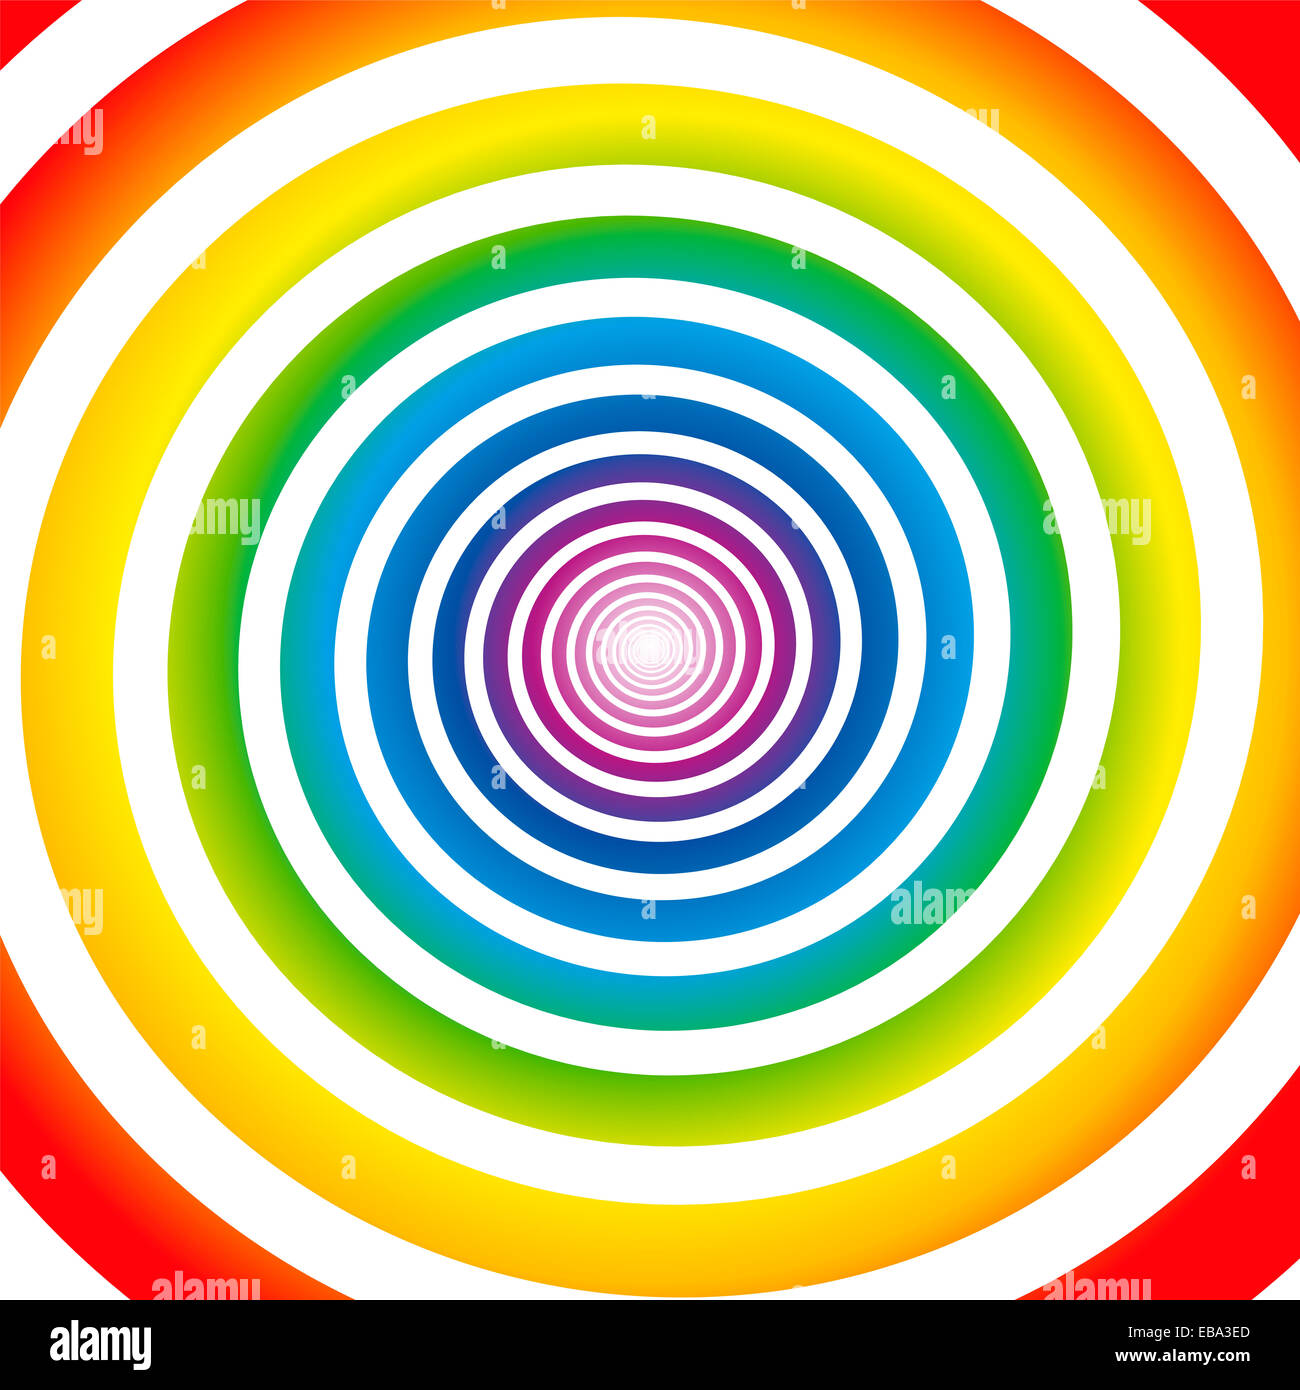 Espiral de gradiente de colores del arco iris. Foto de stock